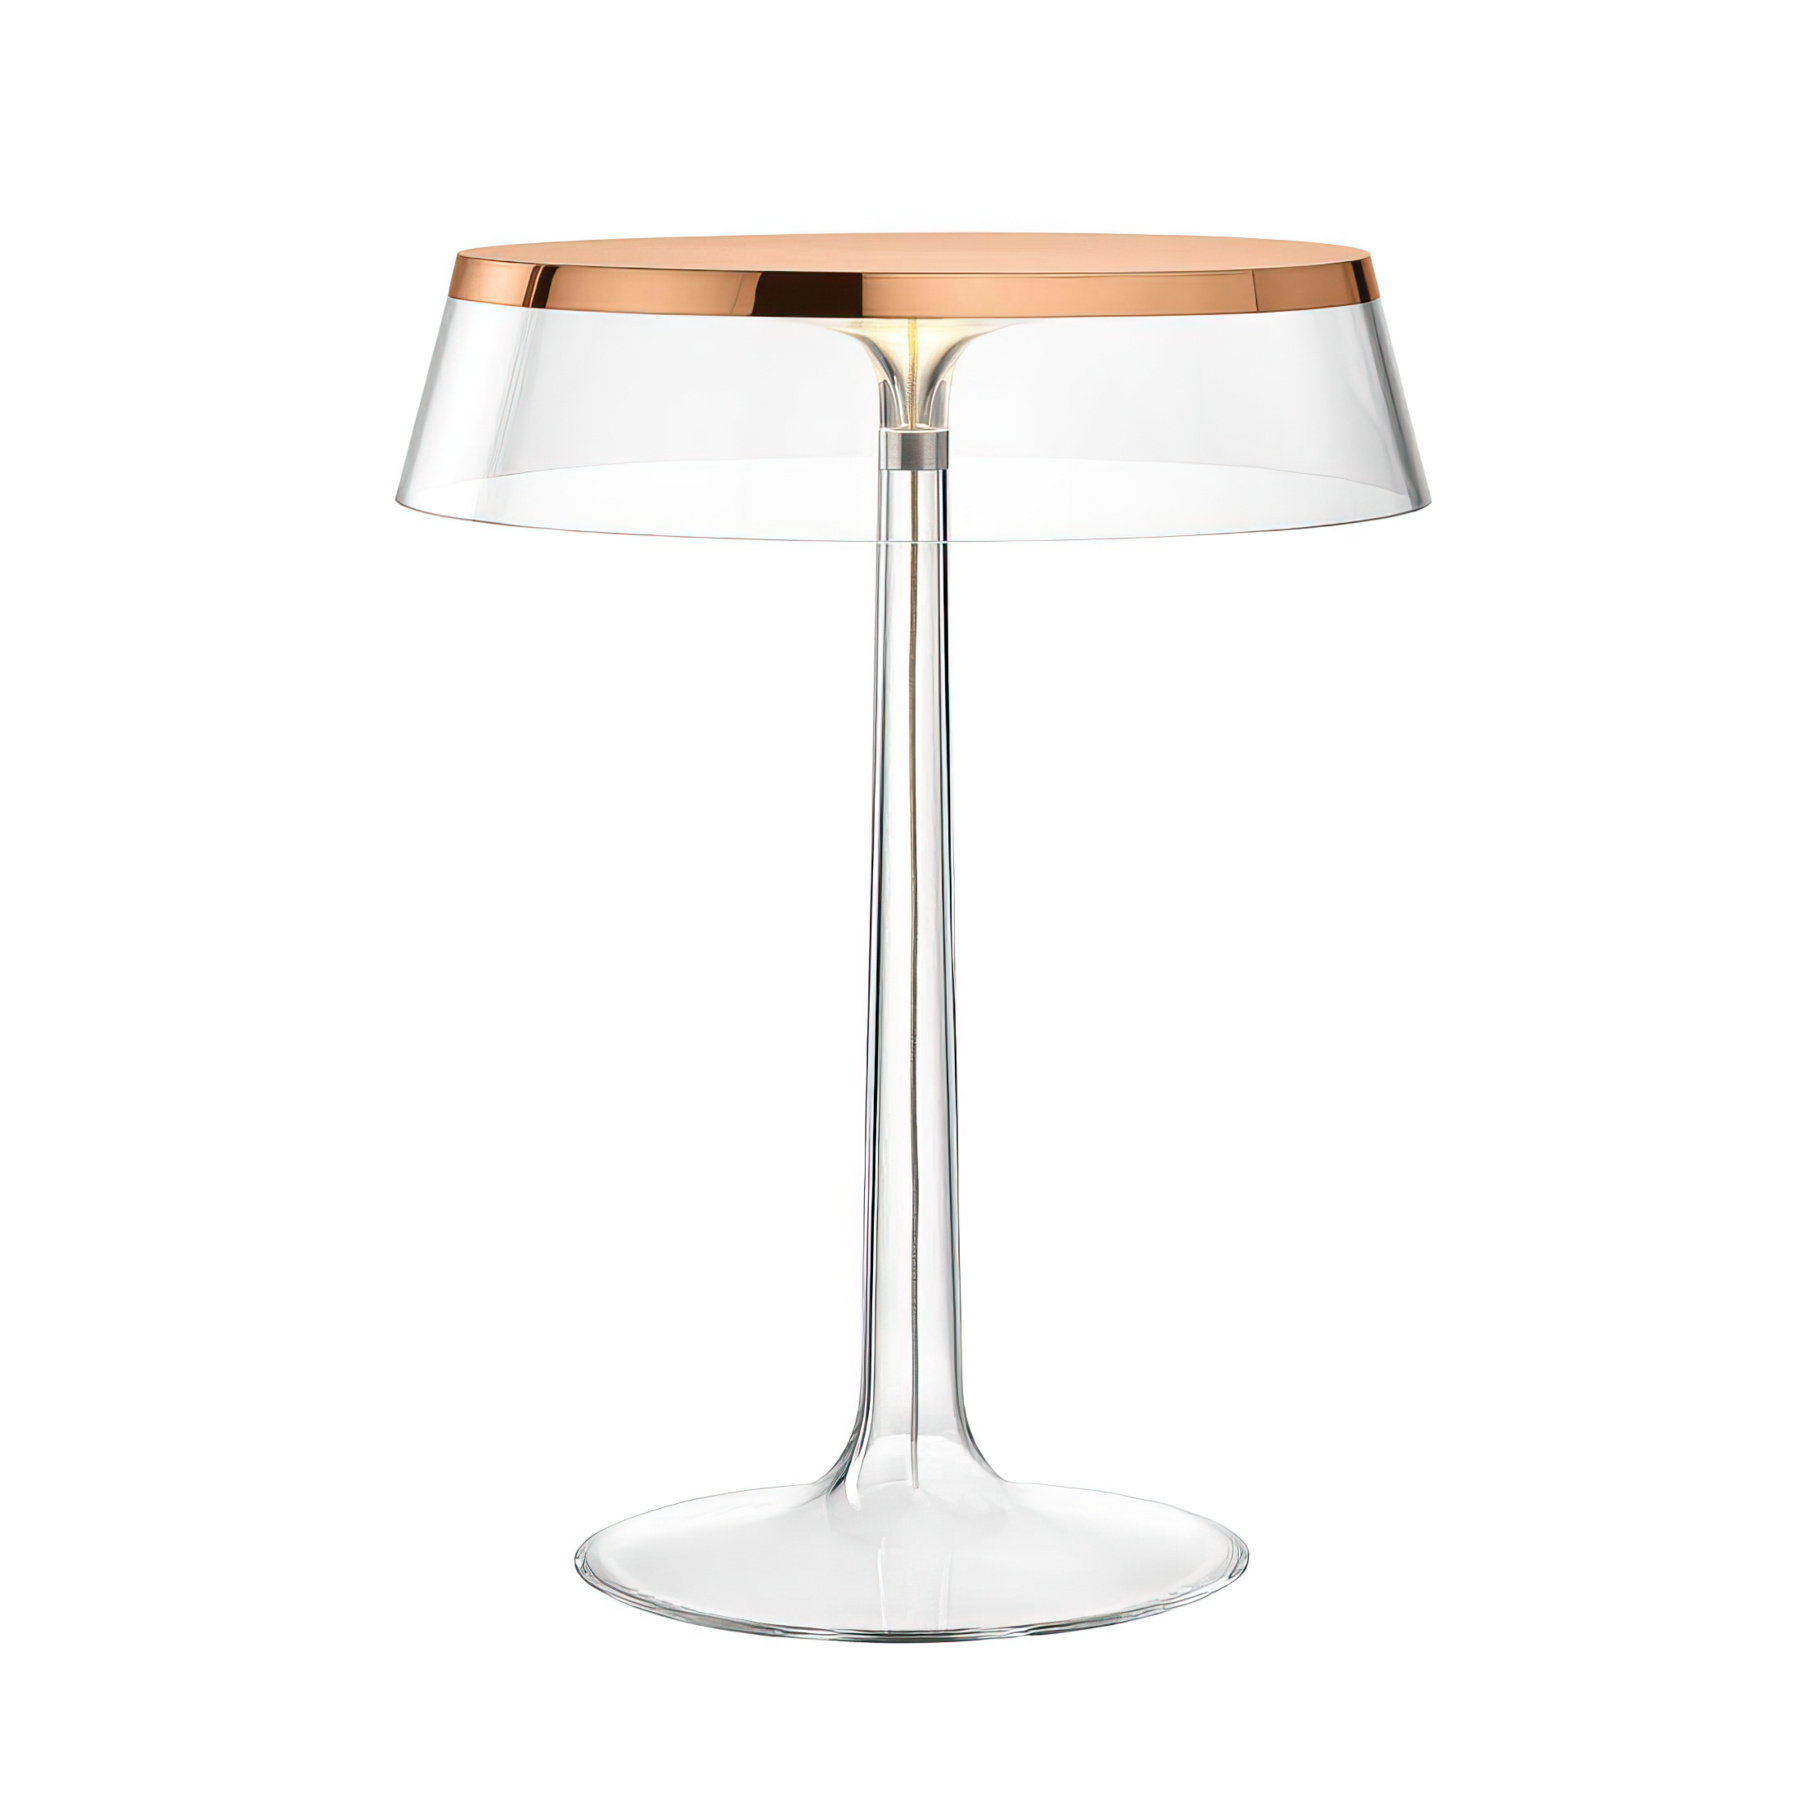 Tischlampe Bon Jour in Copper mit Krone in Transparent